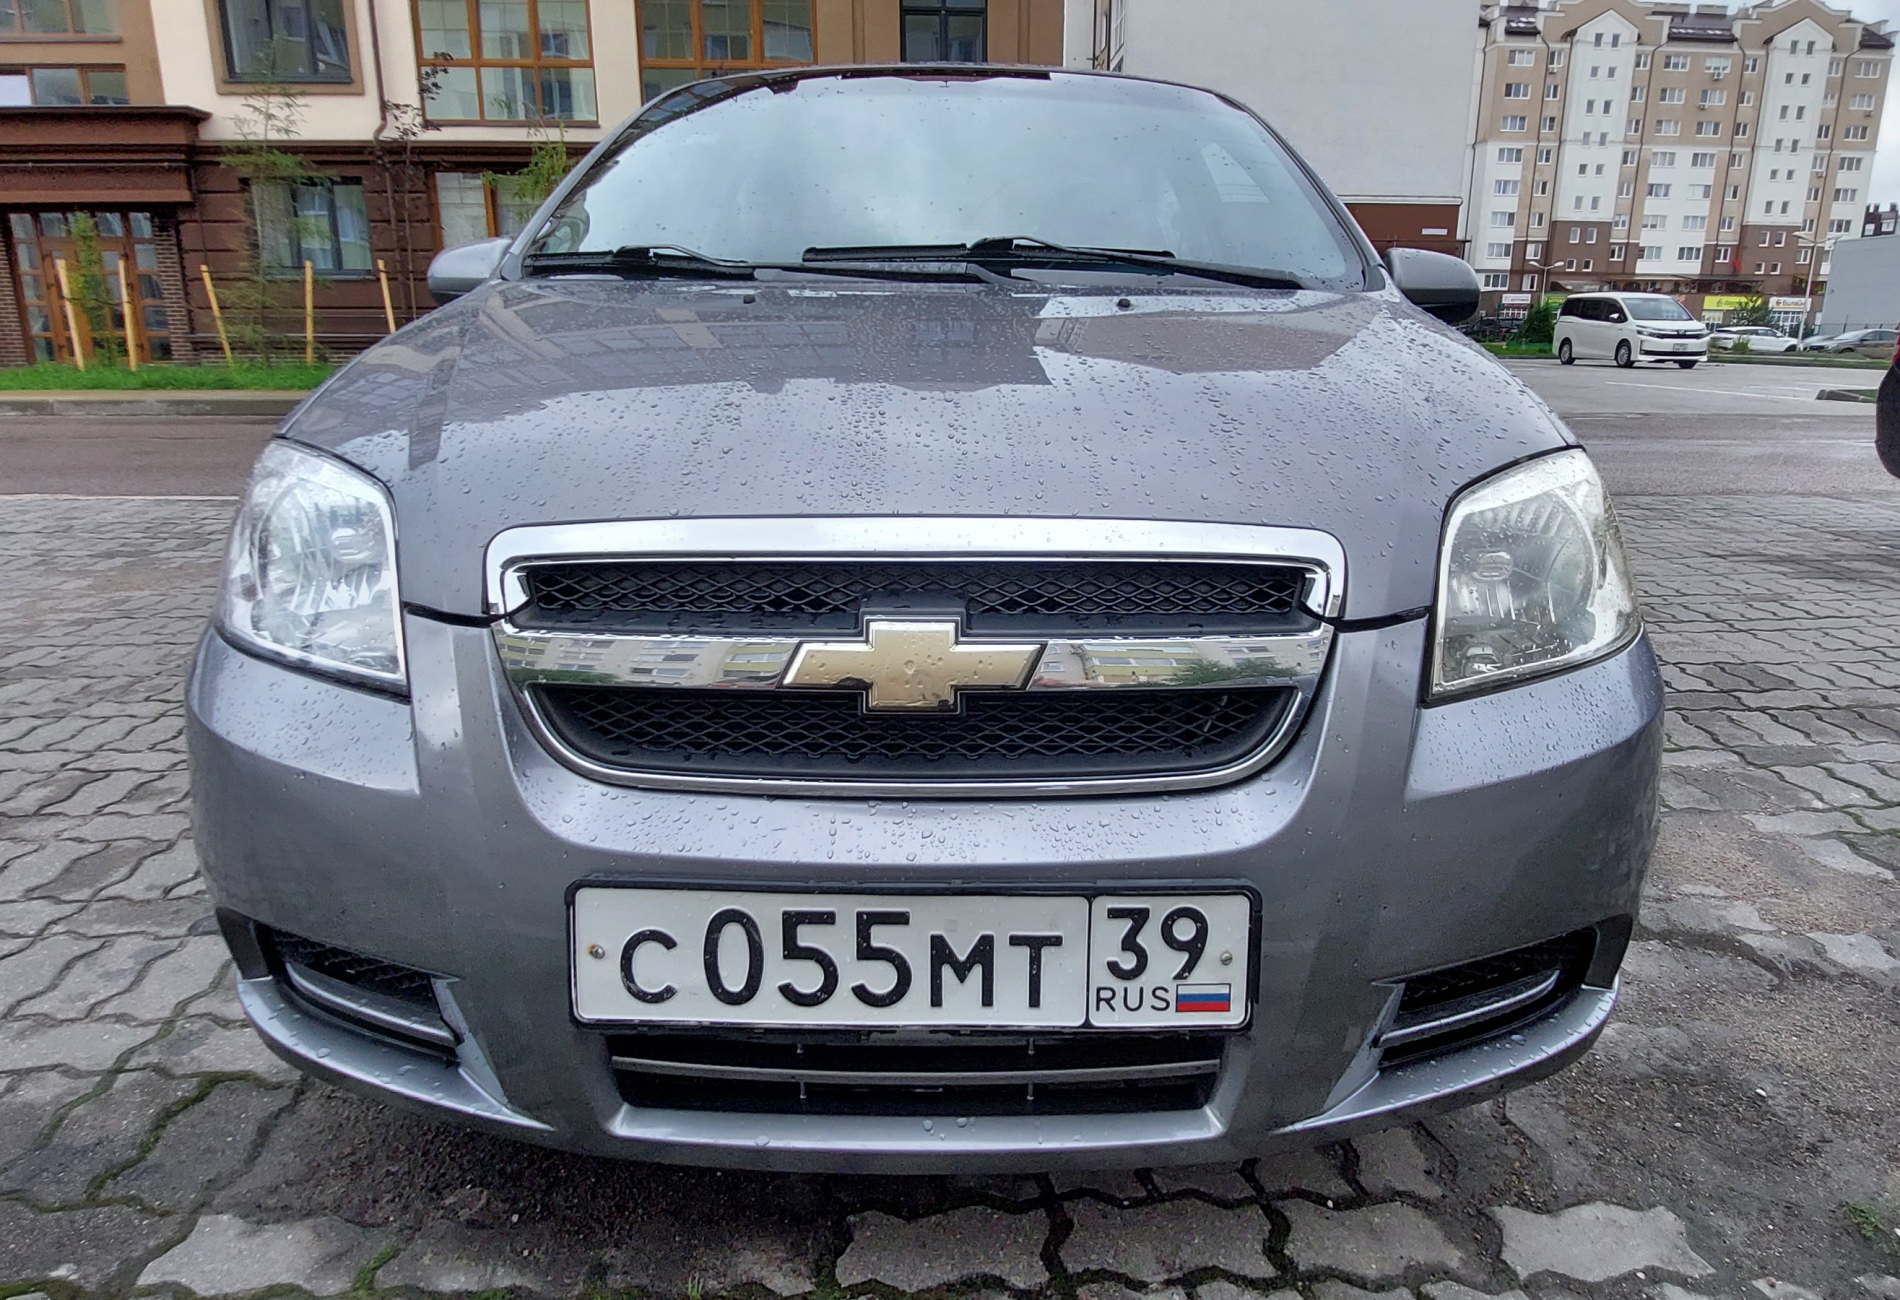 Аренда chevrolet aveo 2007 года в городе Москва от 1440 руб./сутки, передний привод, двигатель: бензин, объем 1.4 литра, ОСАГО (Мультидрайв), без водителя, недорого - RentRide